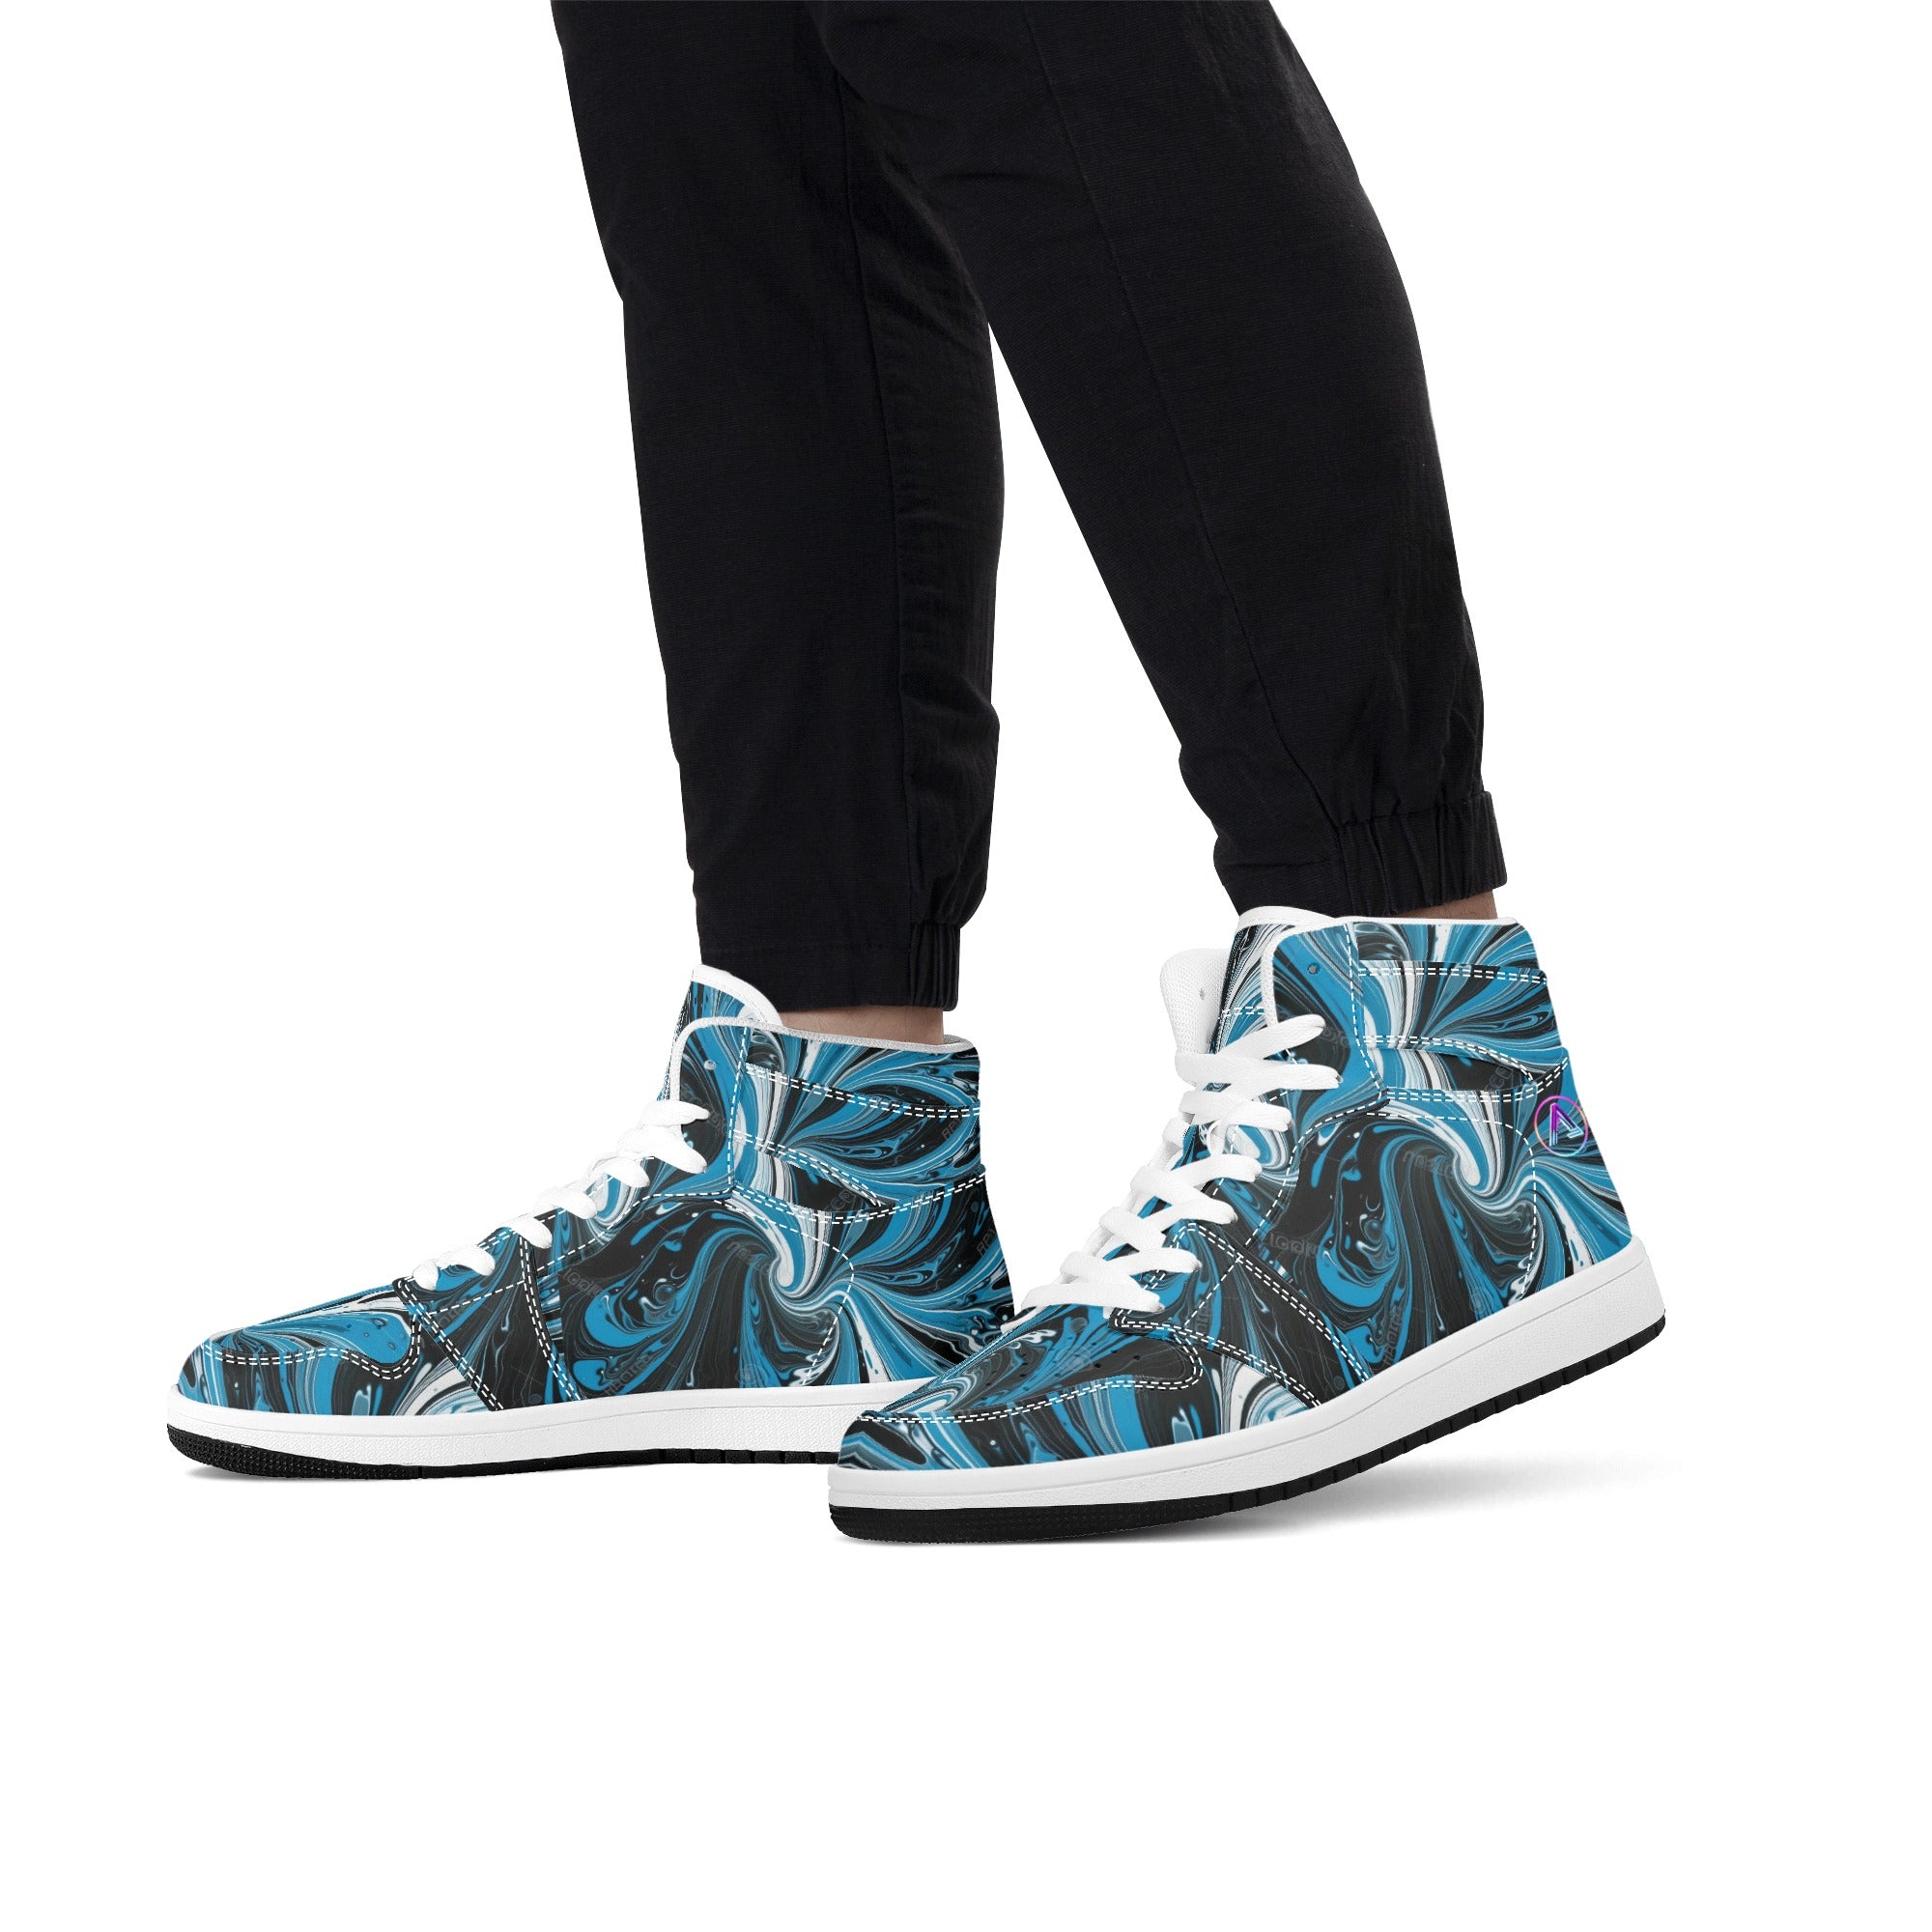 Men's AzureTrek Hi-Top Sneakers